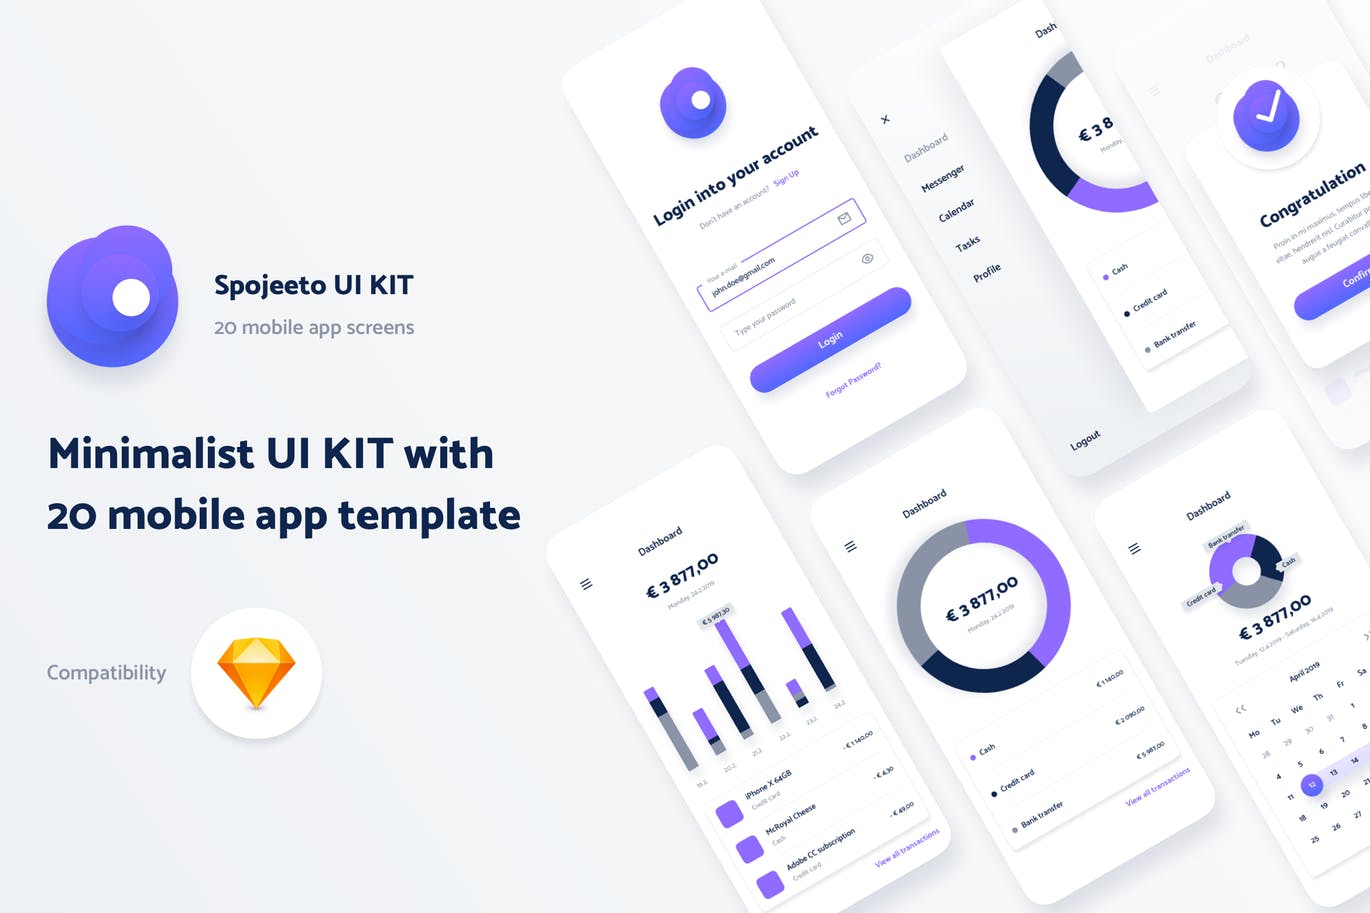 极简主义设计风格APP应用UI设计16图库精选套件v1 Spojeeto Mobile App UI Kit插图